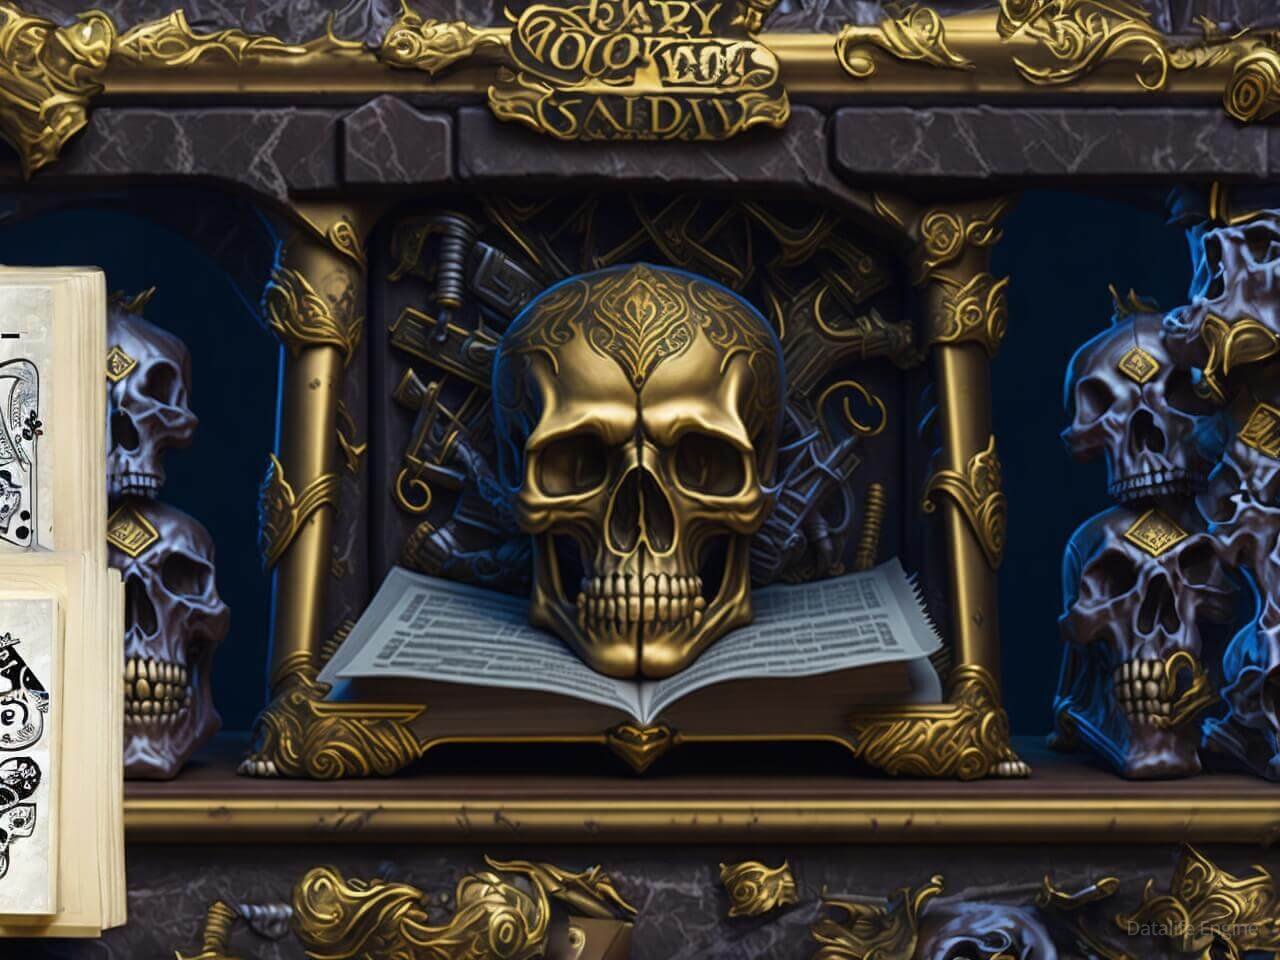 Book of Skulls: Обзор слота с загадочной тематикой и высокими выигрышами